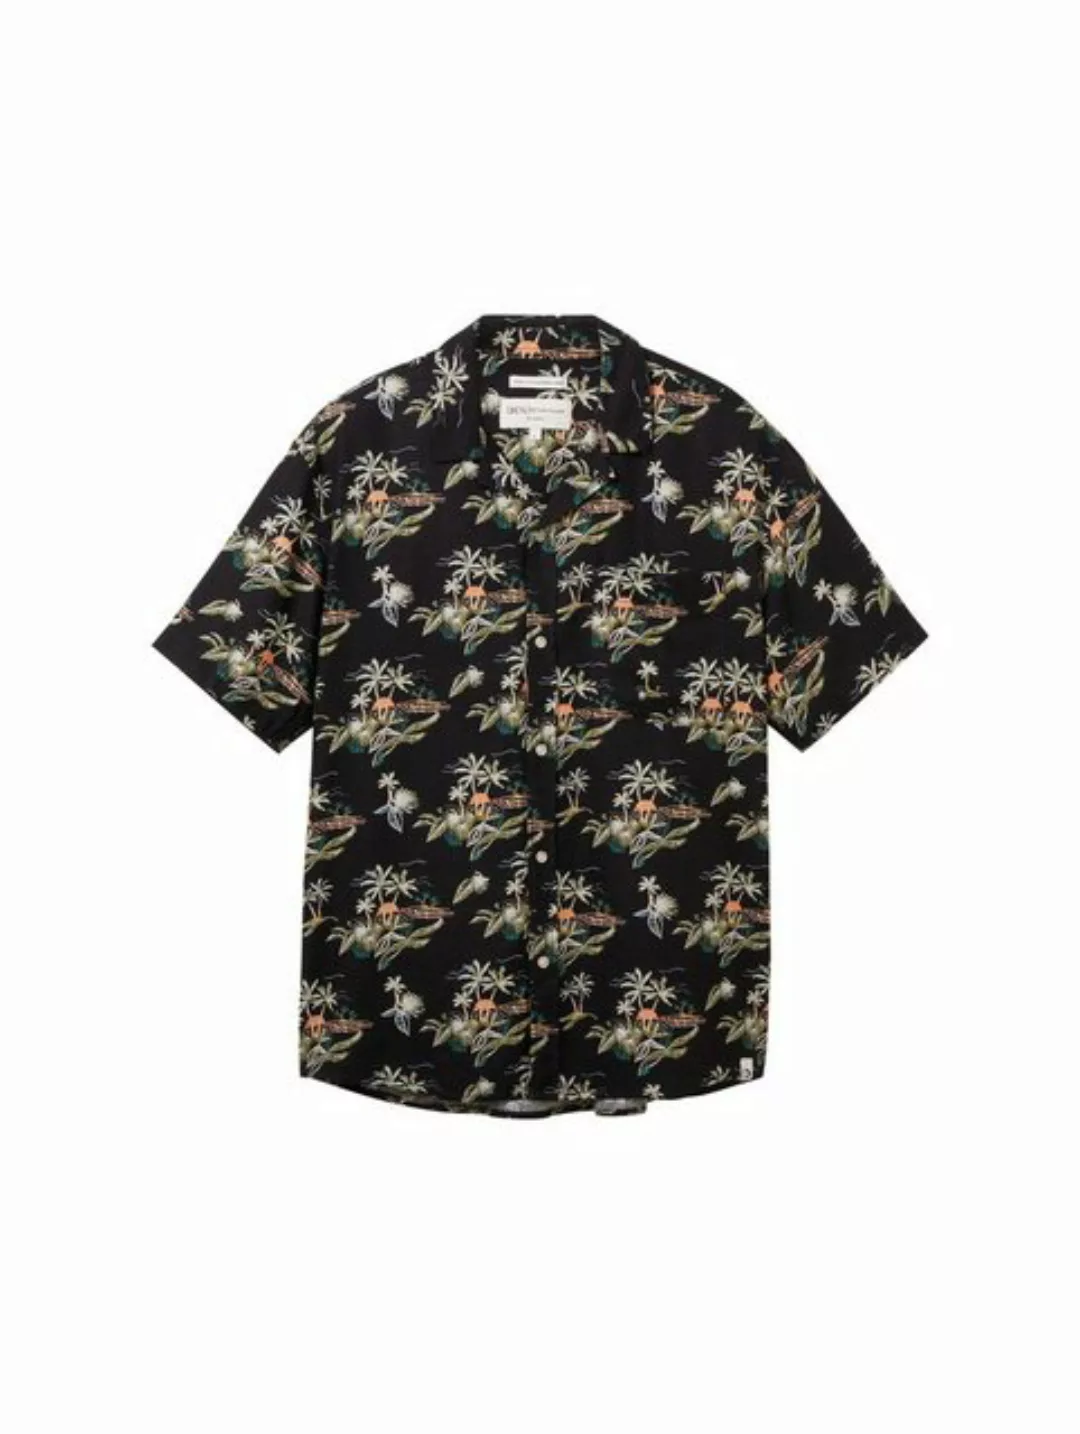 TOM TAILOR Denim T-Shirt relaxed viscose linen shirt, black tropical print günstig online kaufen